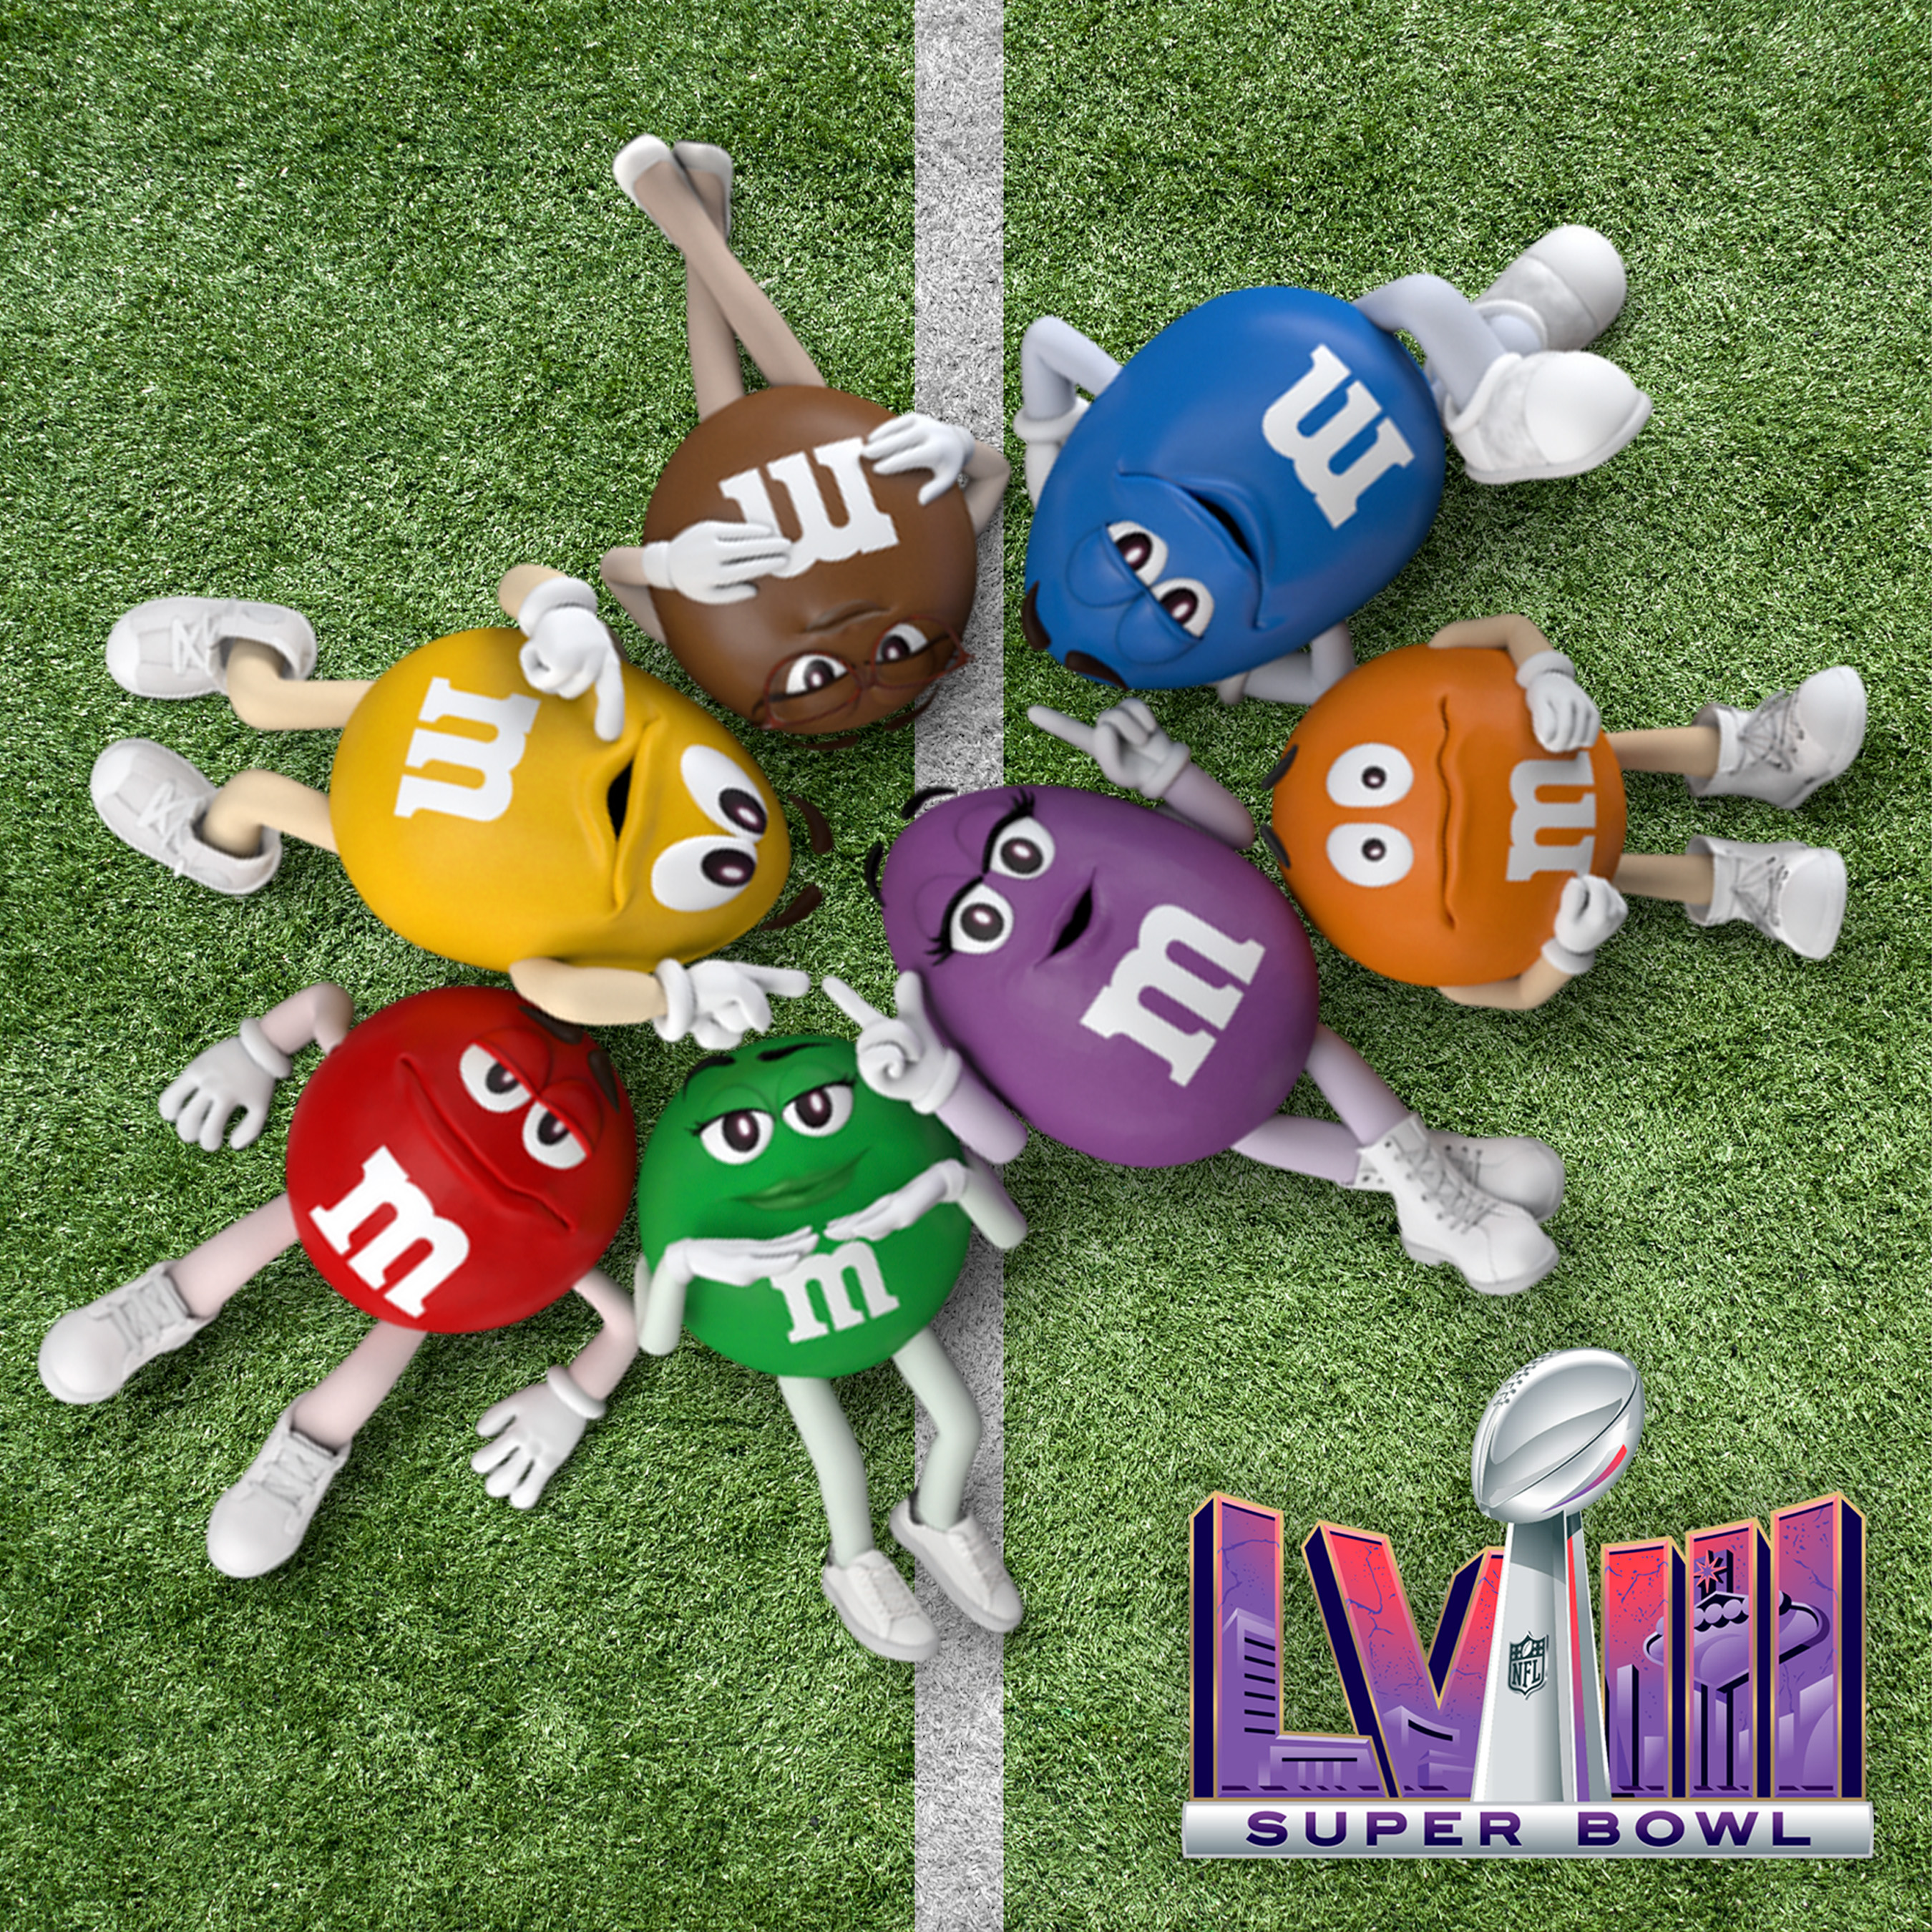 M&M's Super Bowl Campaign